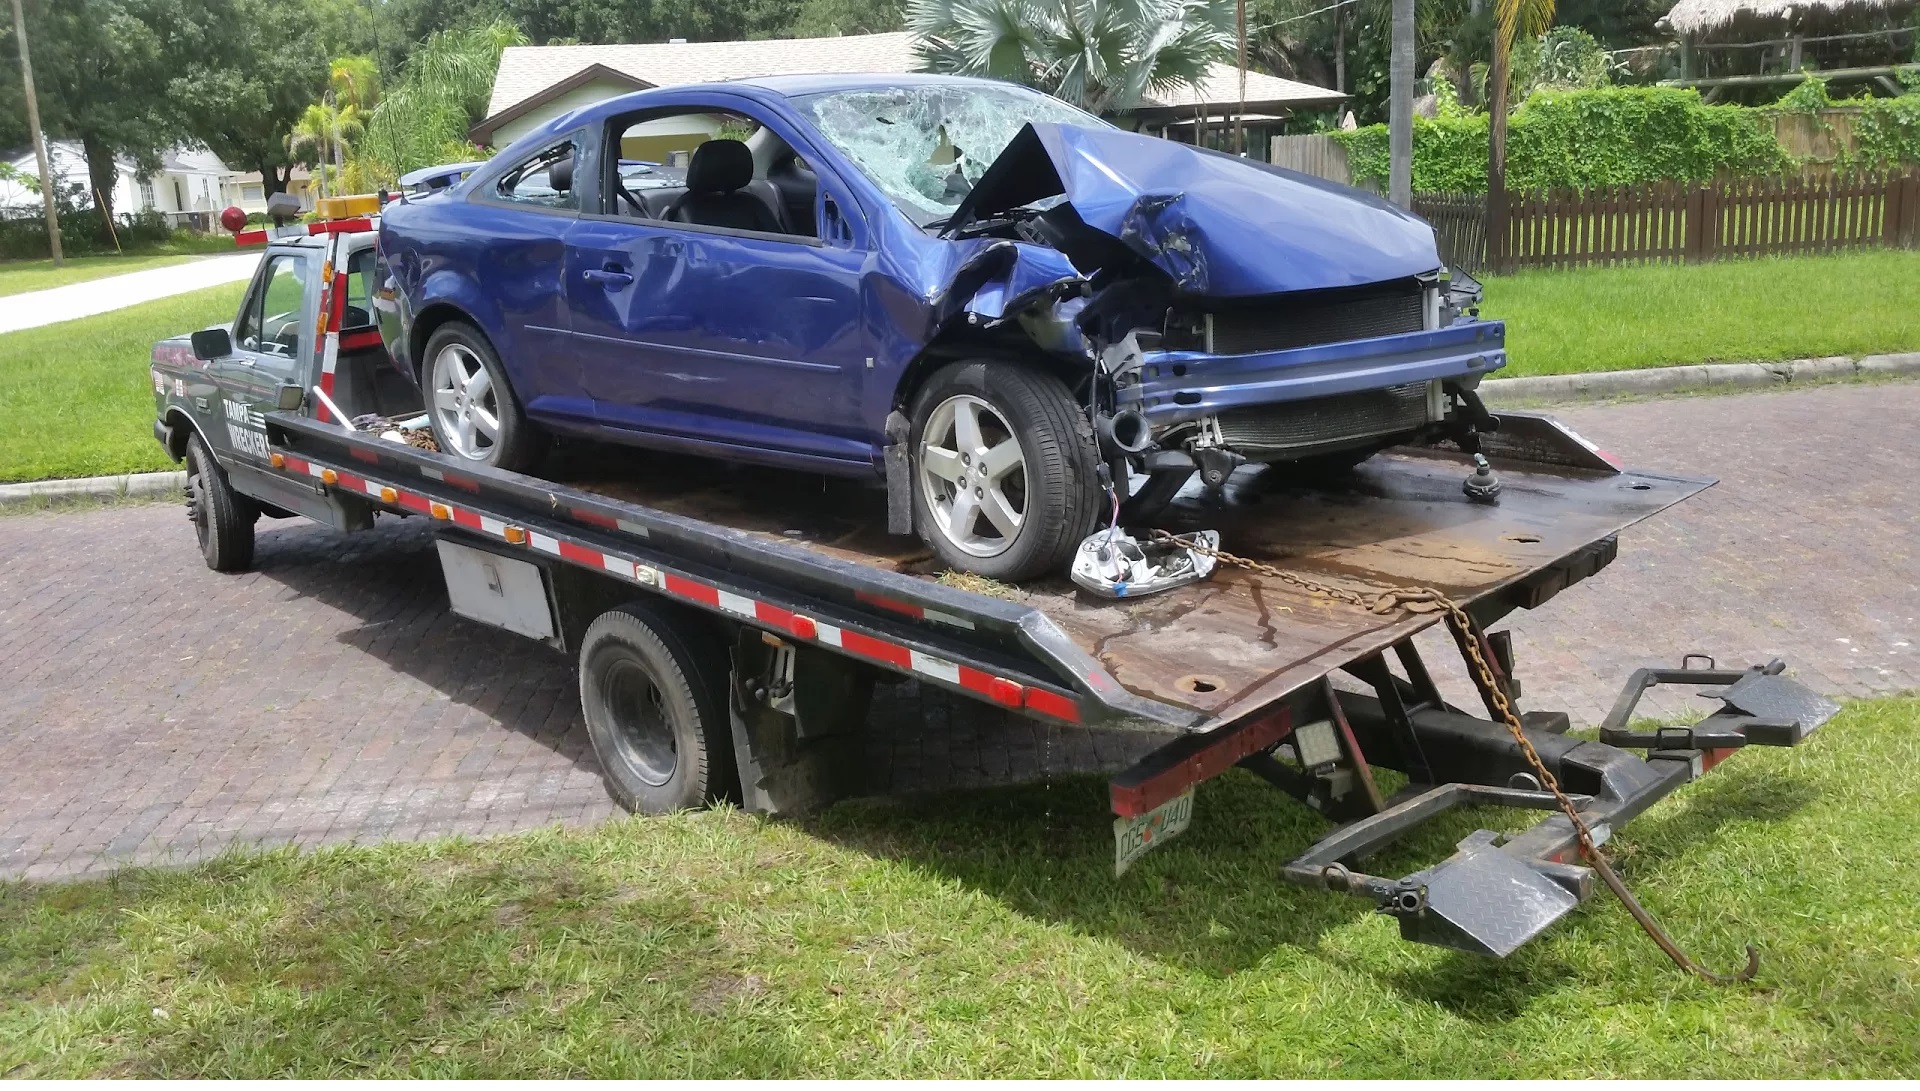 2006 Chevy Cobalt Florida Junk Cars Tampa (813)833-9273